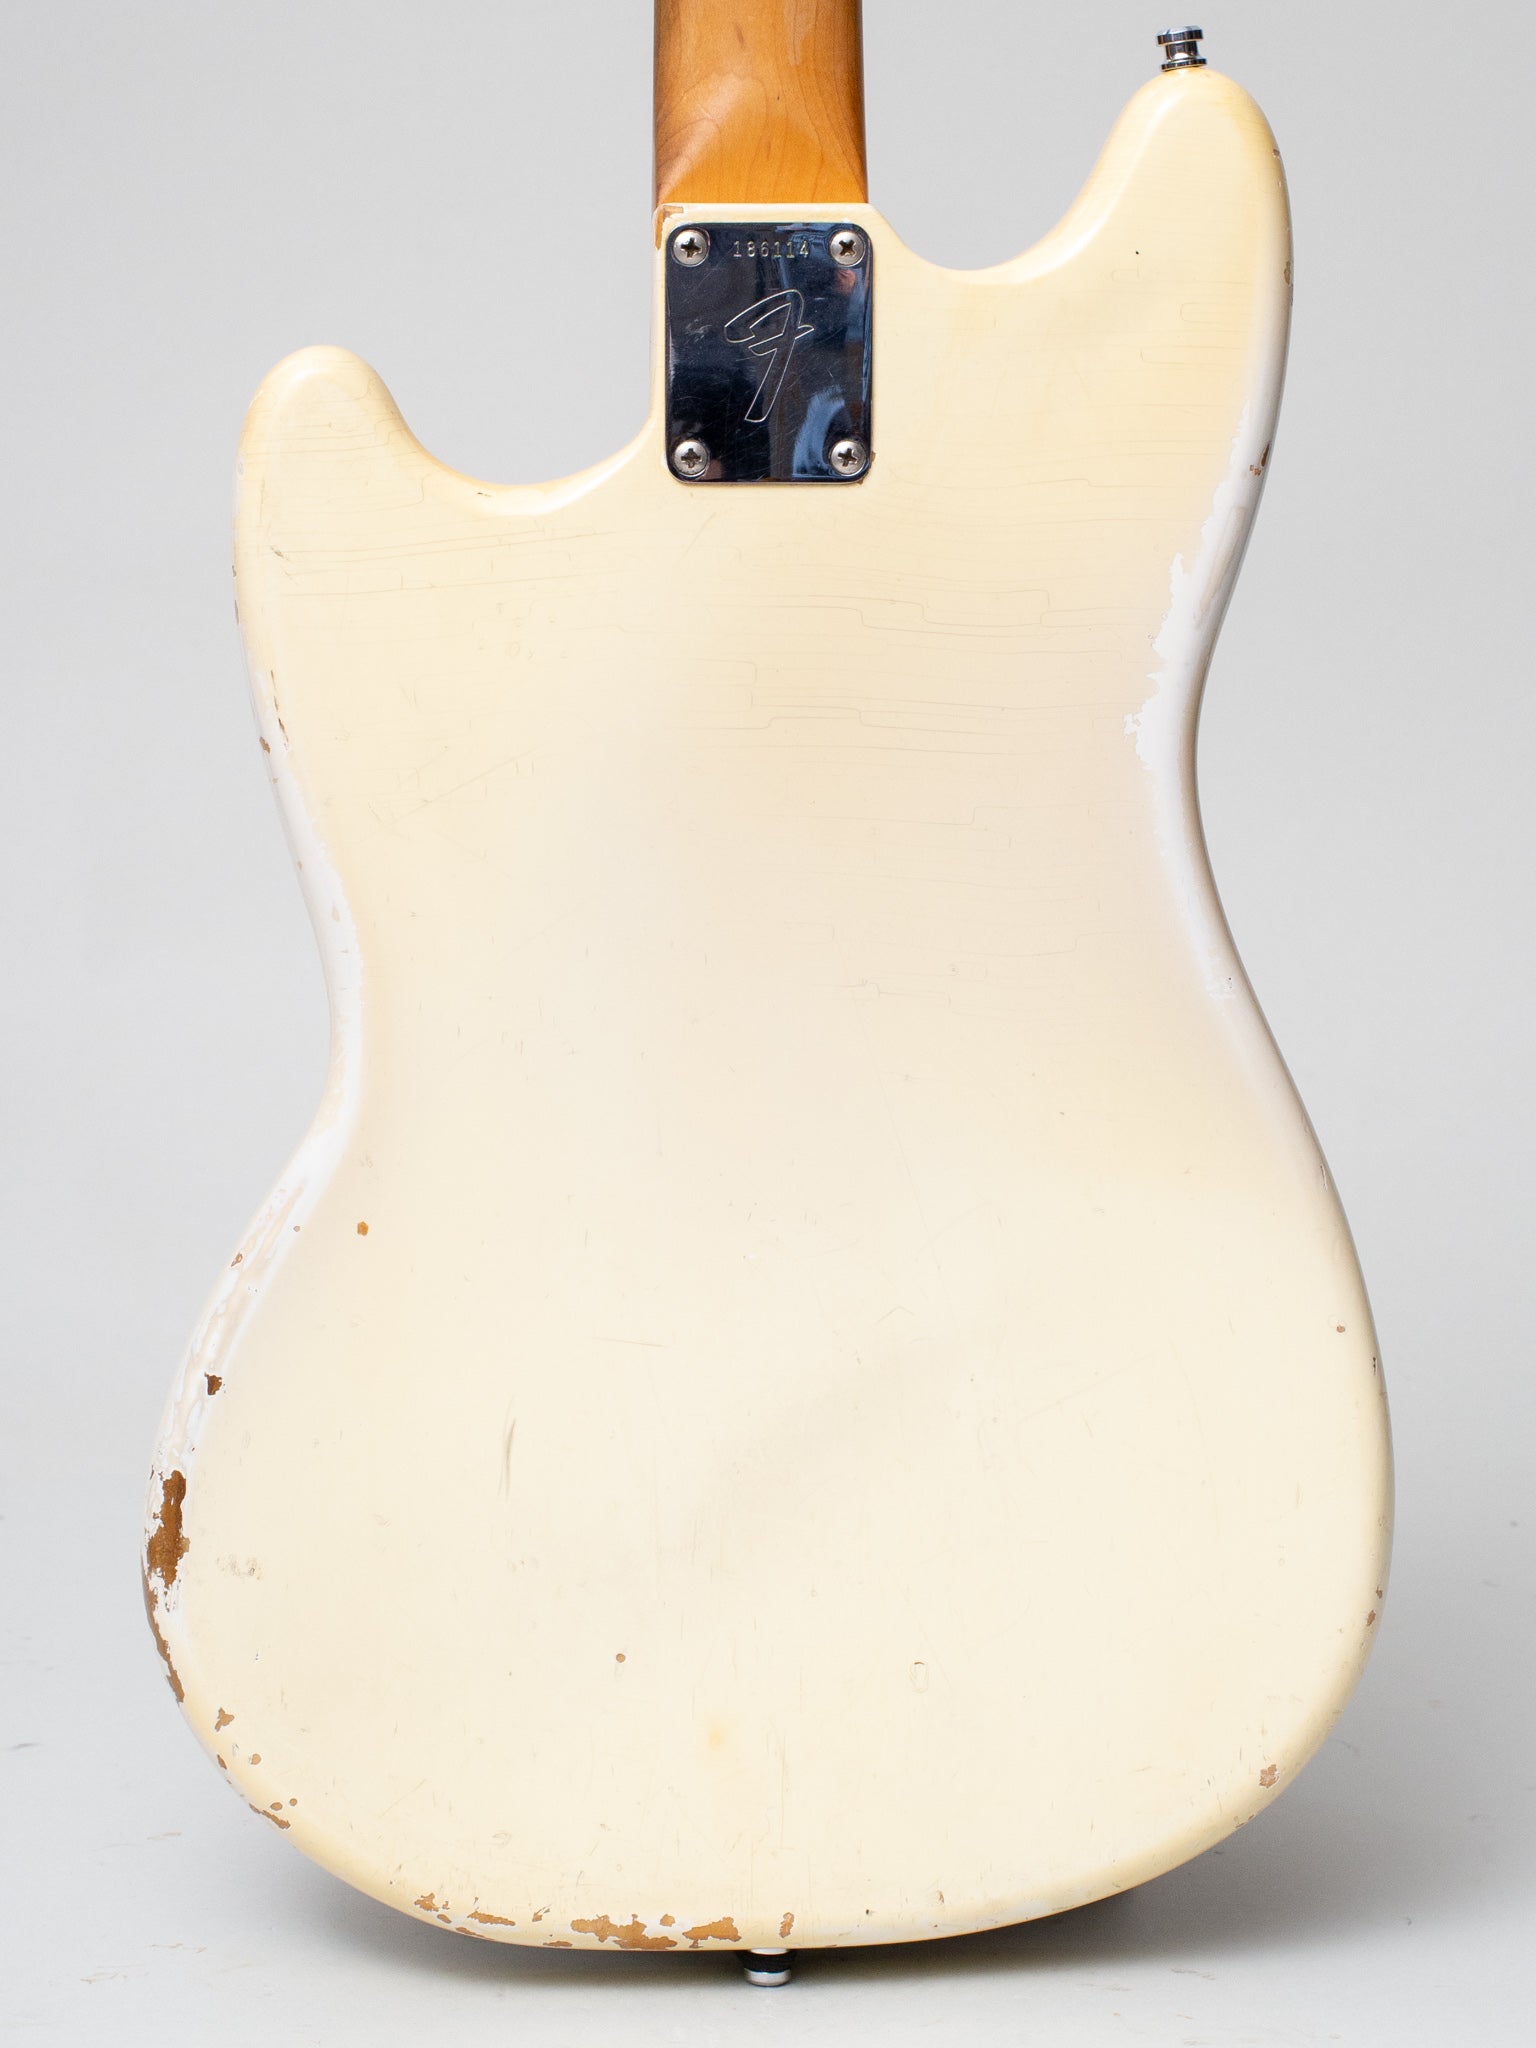 1967 Fender Mustang